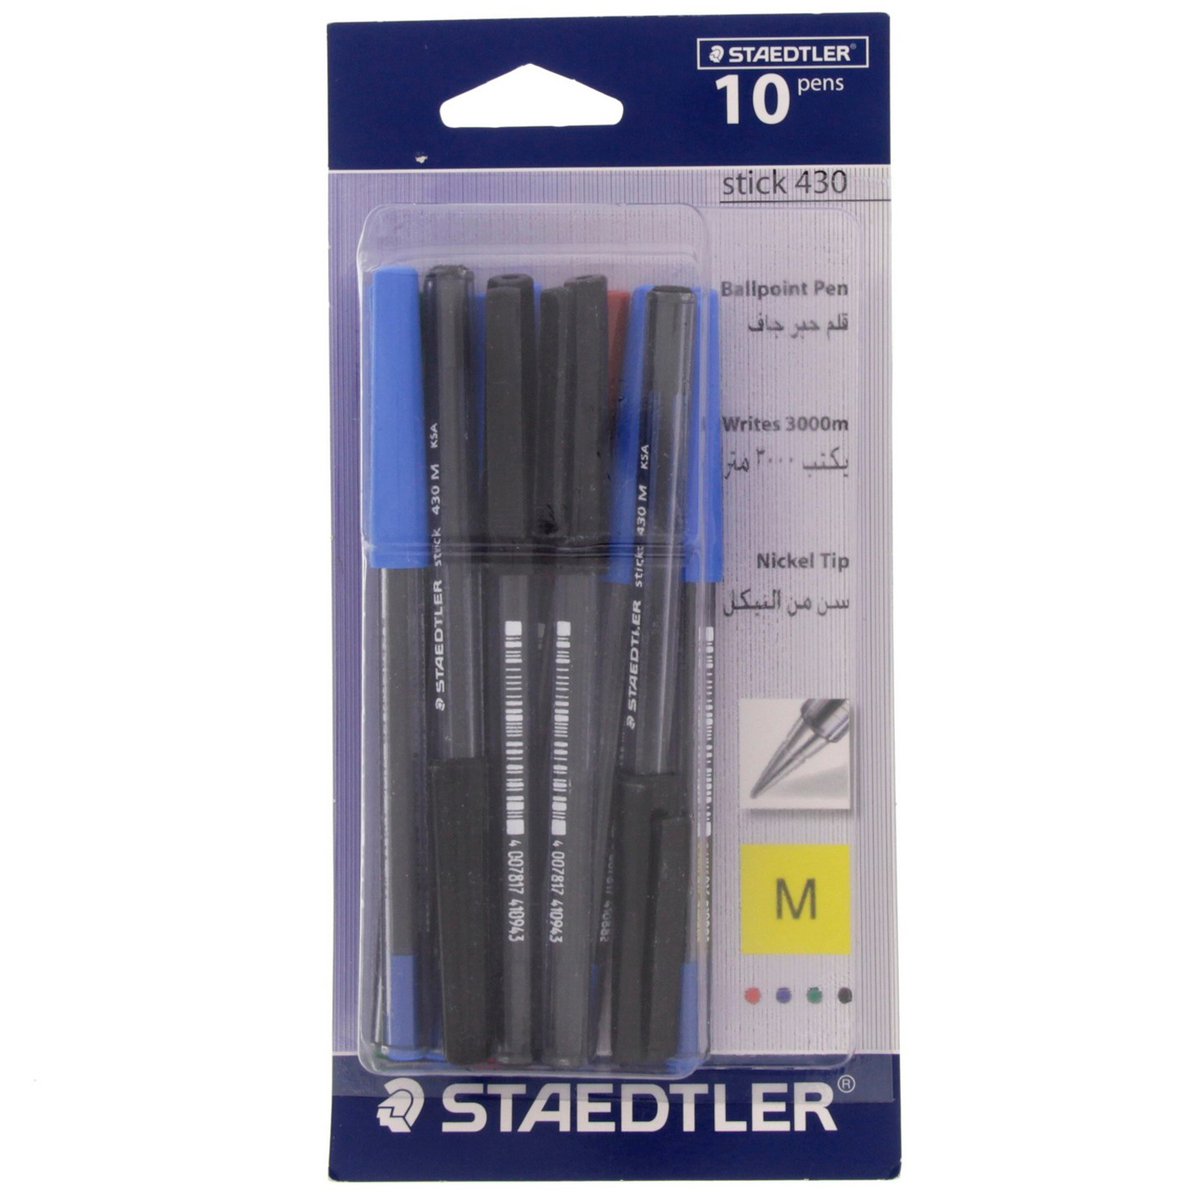 Staedtler Ballpoint Stick Pen 430M 10 Piece